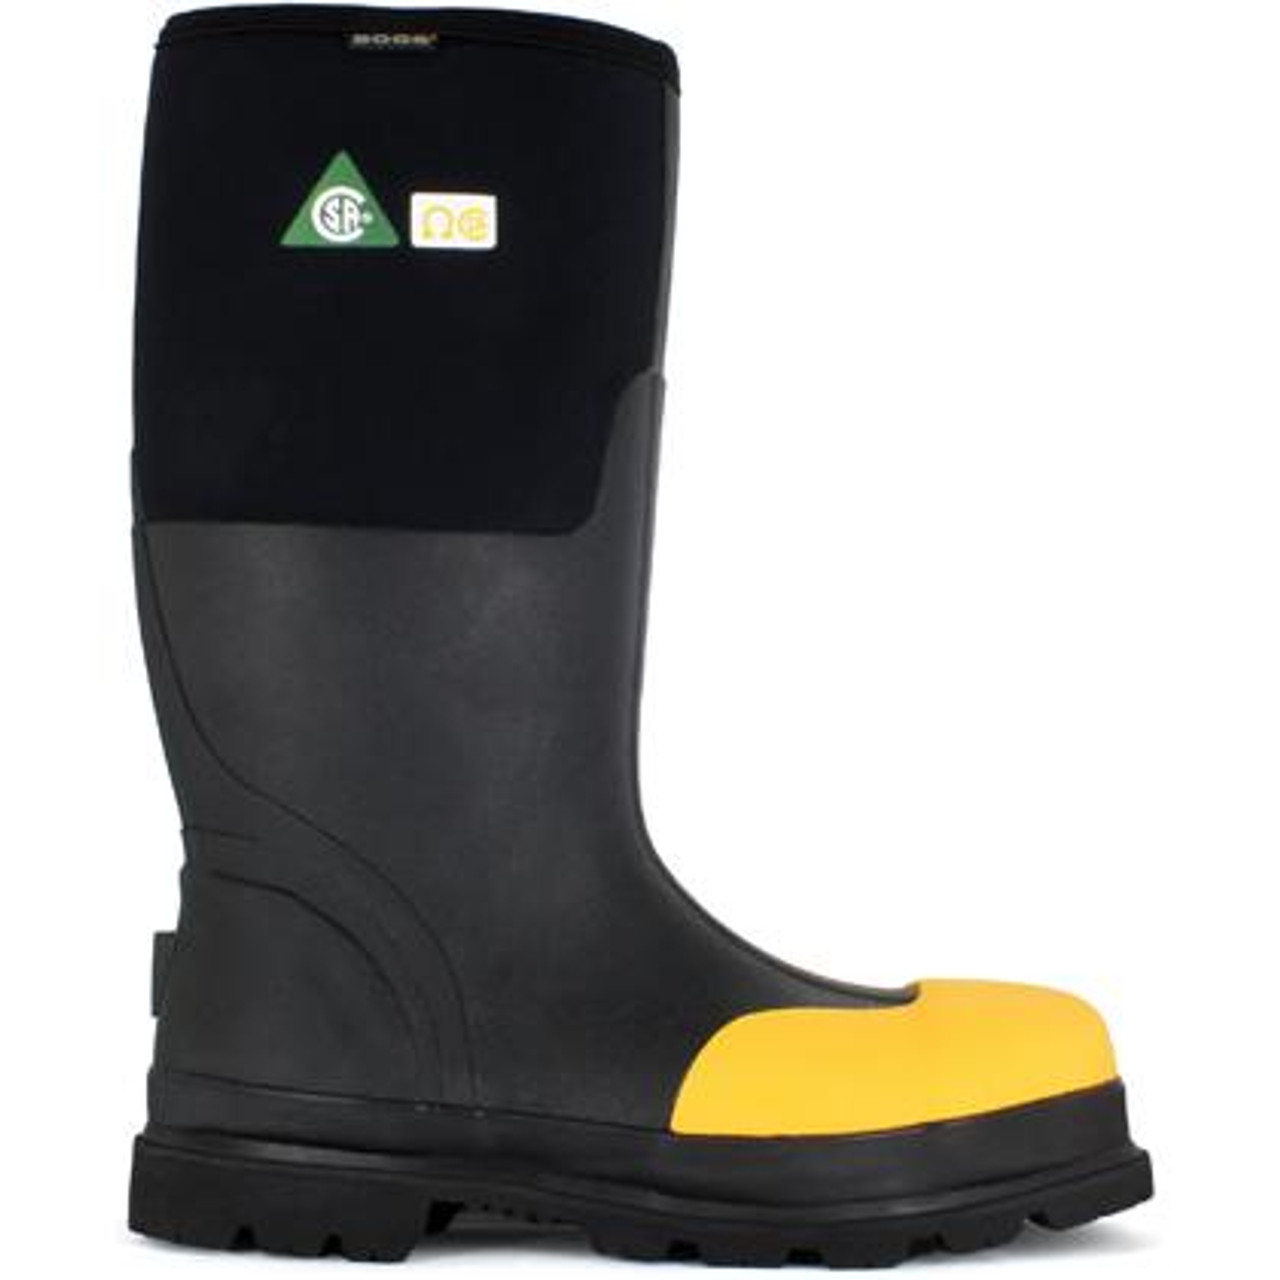 bogs steel toe rubber boots cheap online